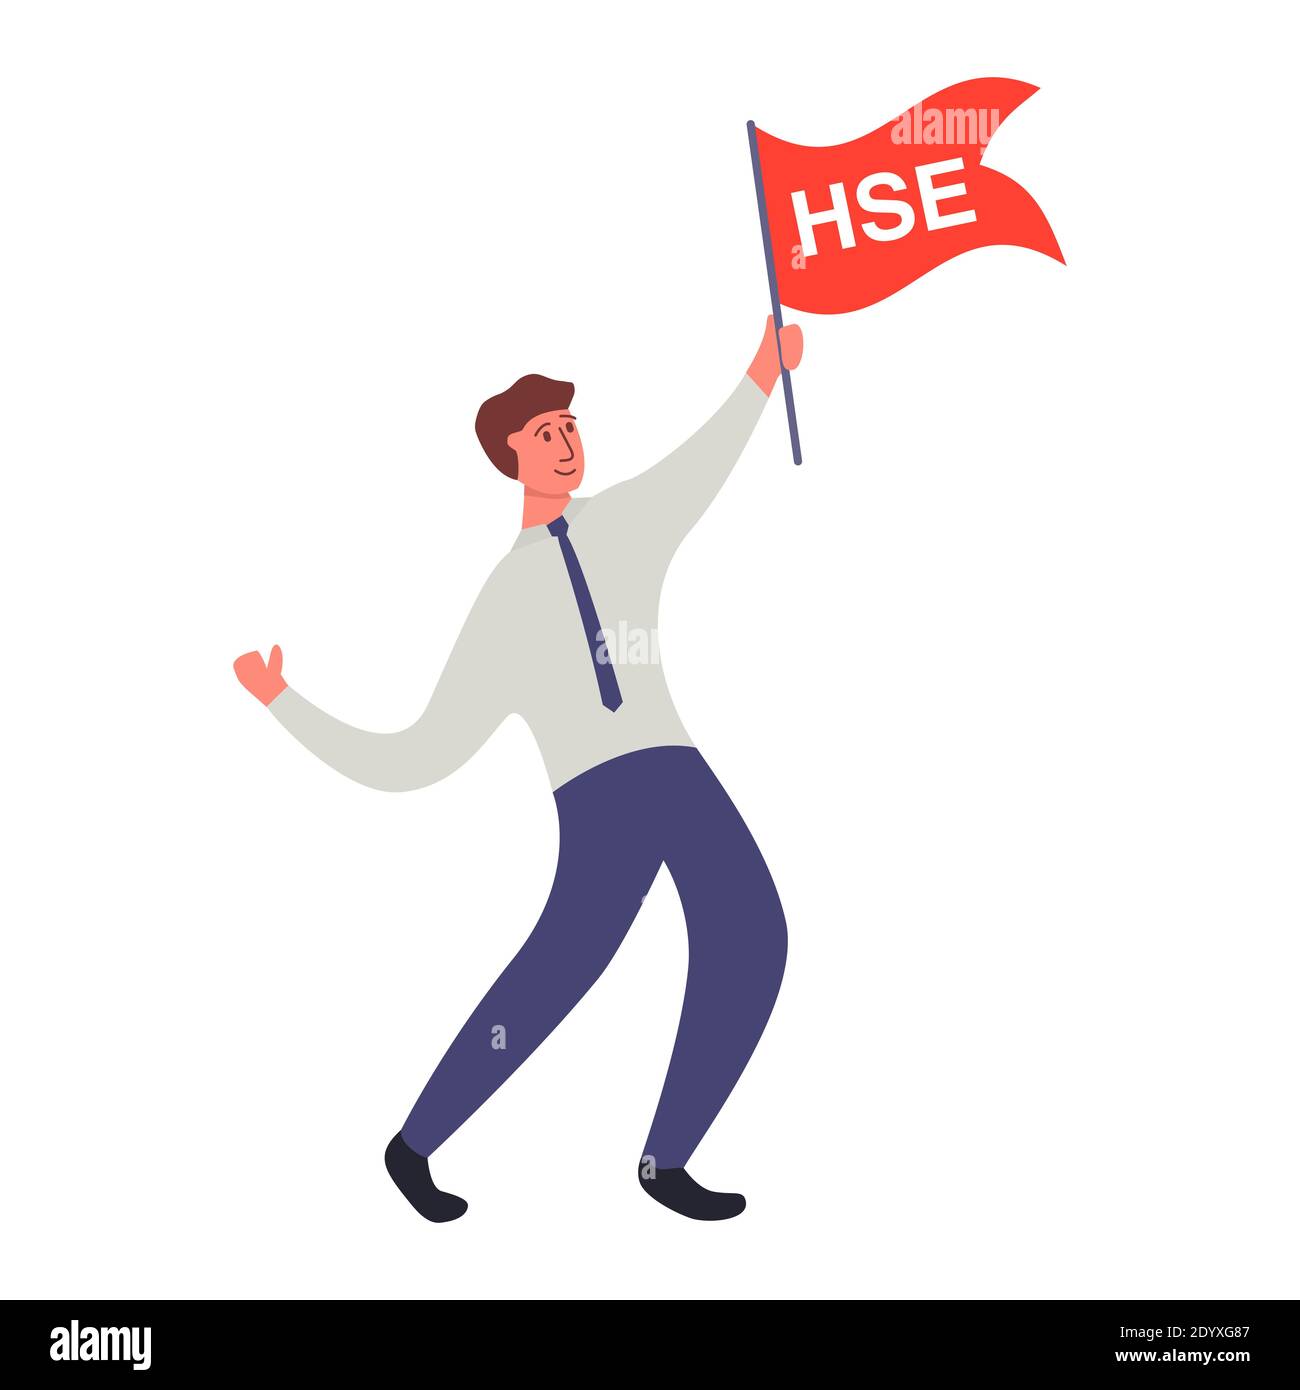 Un homme d'affaires dans une cravate, une chemise et un pantalon agite un drapeau avec l'inscription HSE. Illustration de Vecteur